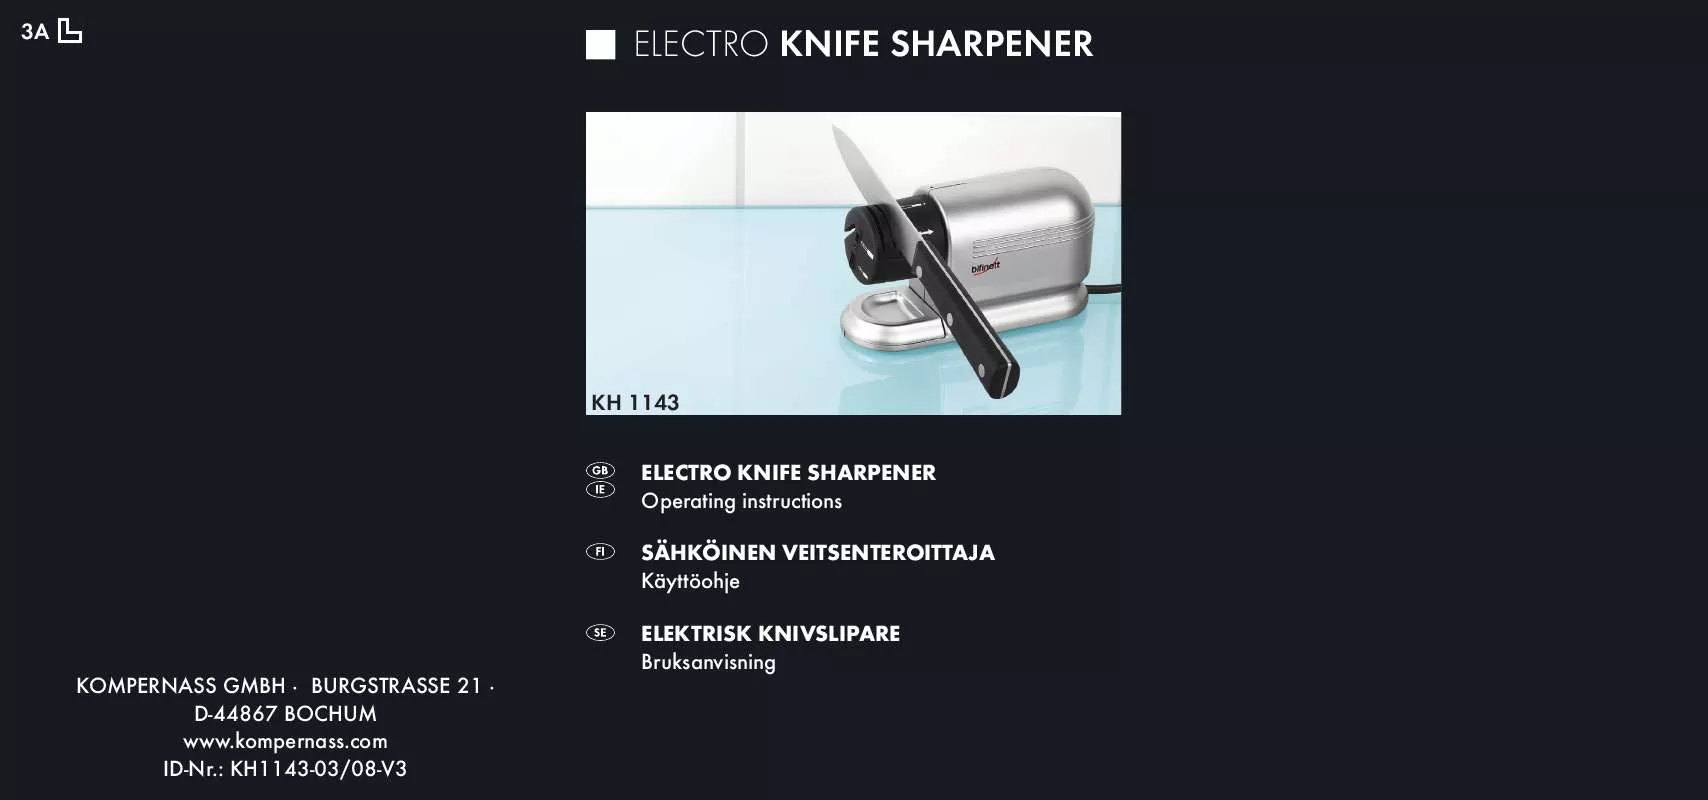 Mode d'emploi BIFINETT KH 1143 ELECTRO KNIFE SHARPENER